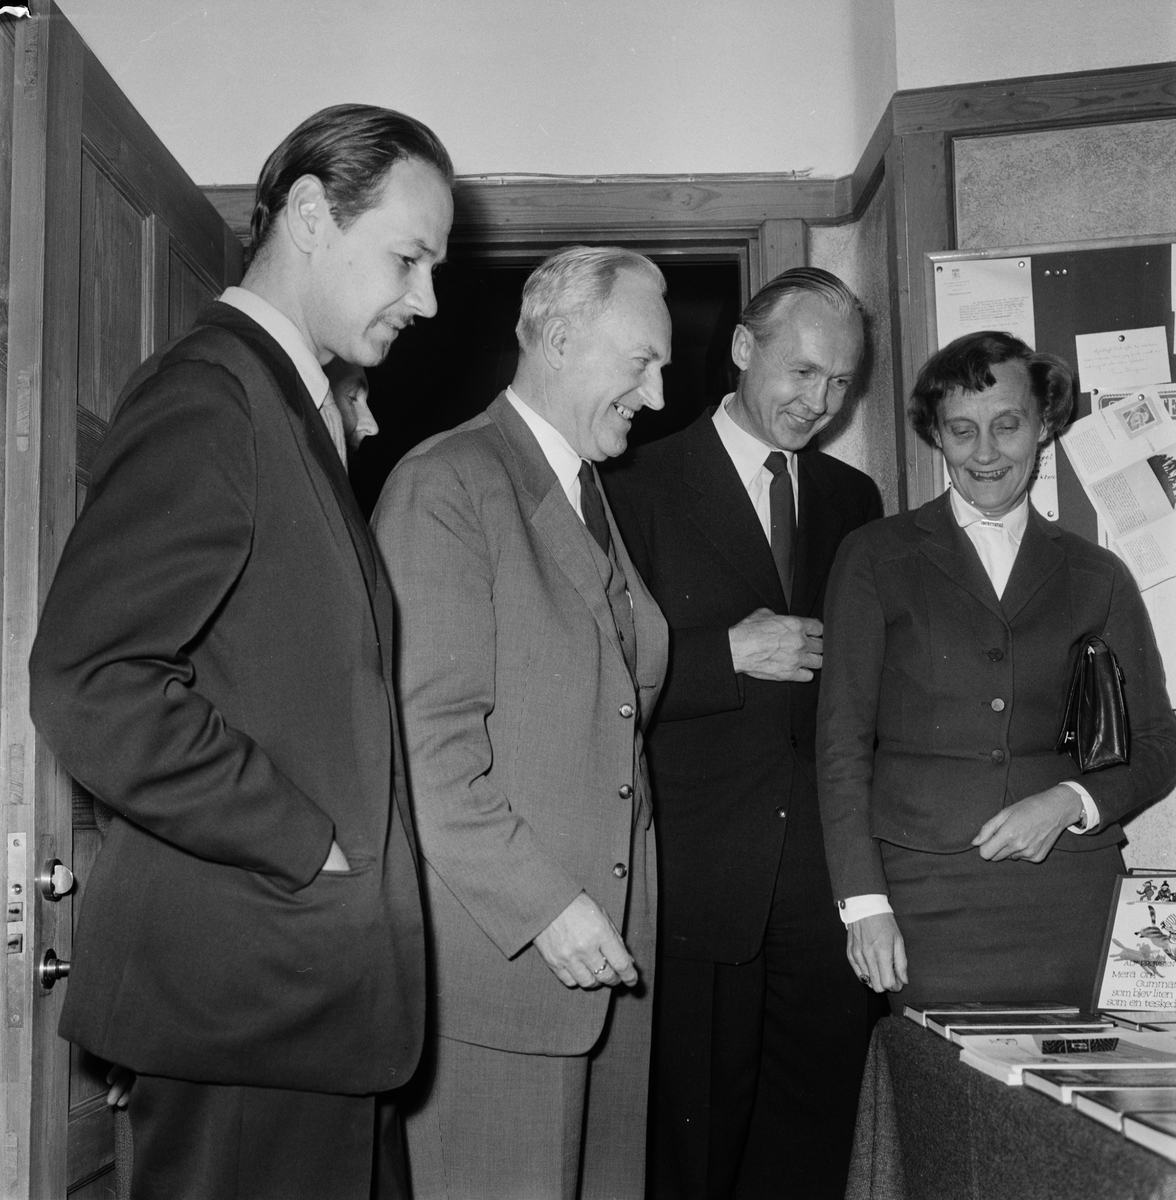 Barnboksdebatt, Astrid Lindgren och Lennart Hellsing med flera, Vaksalaskolan, Uppsala 1958